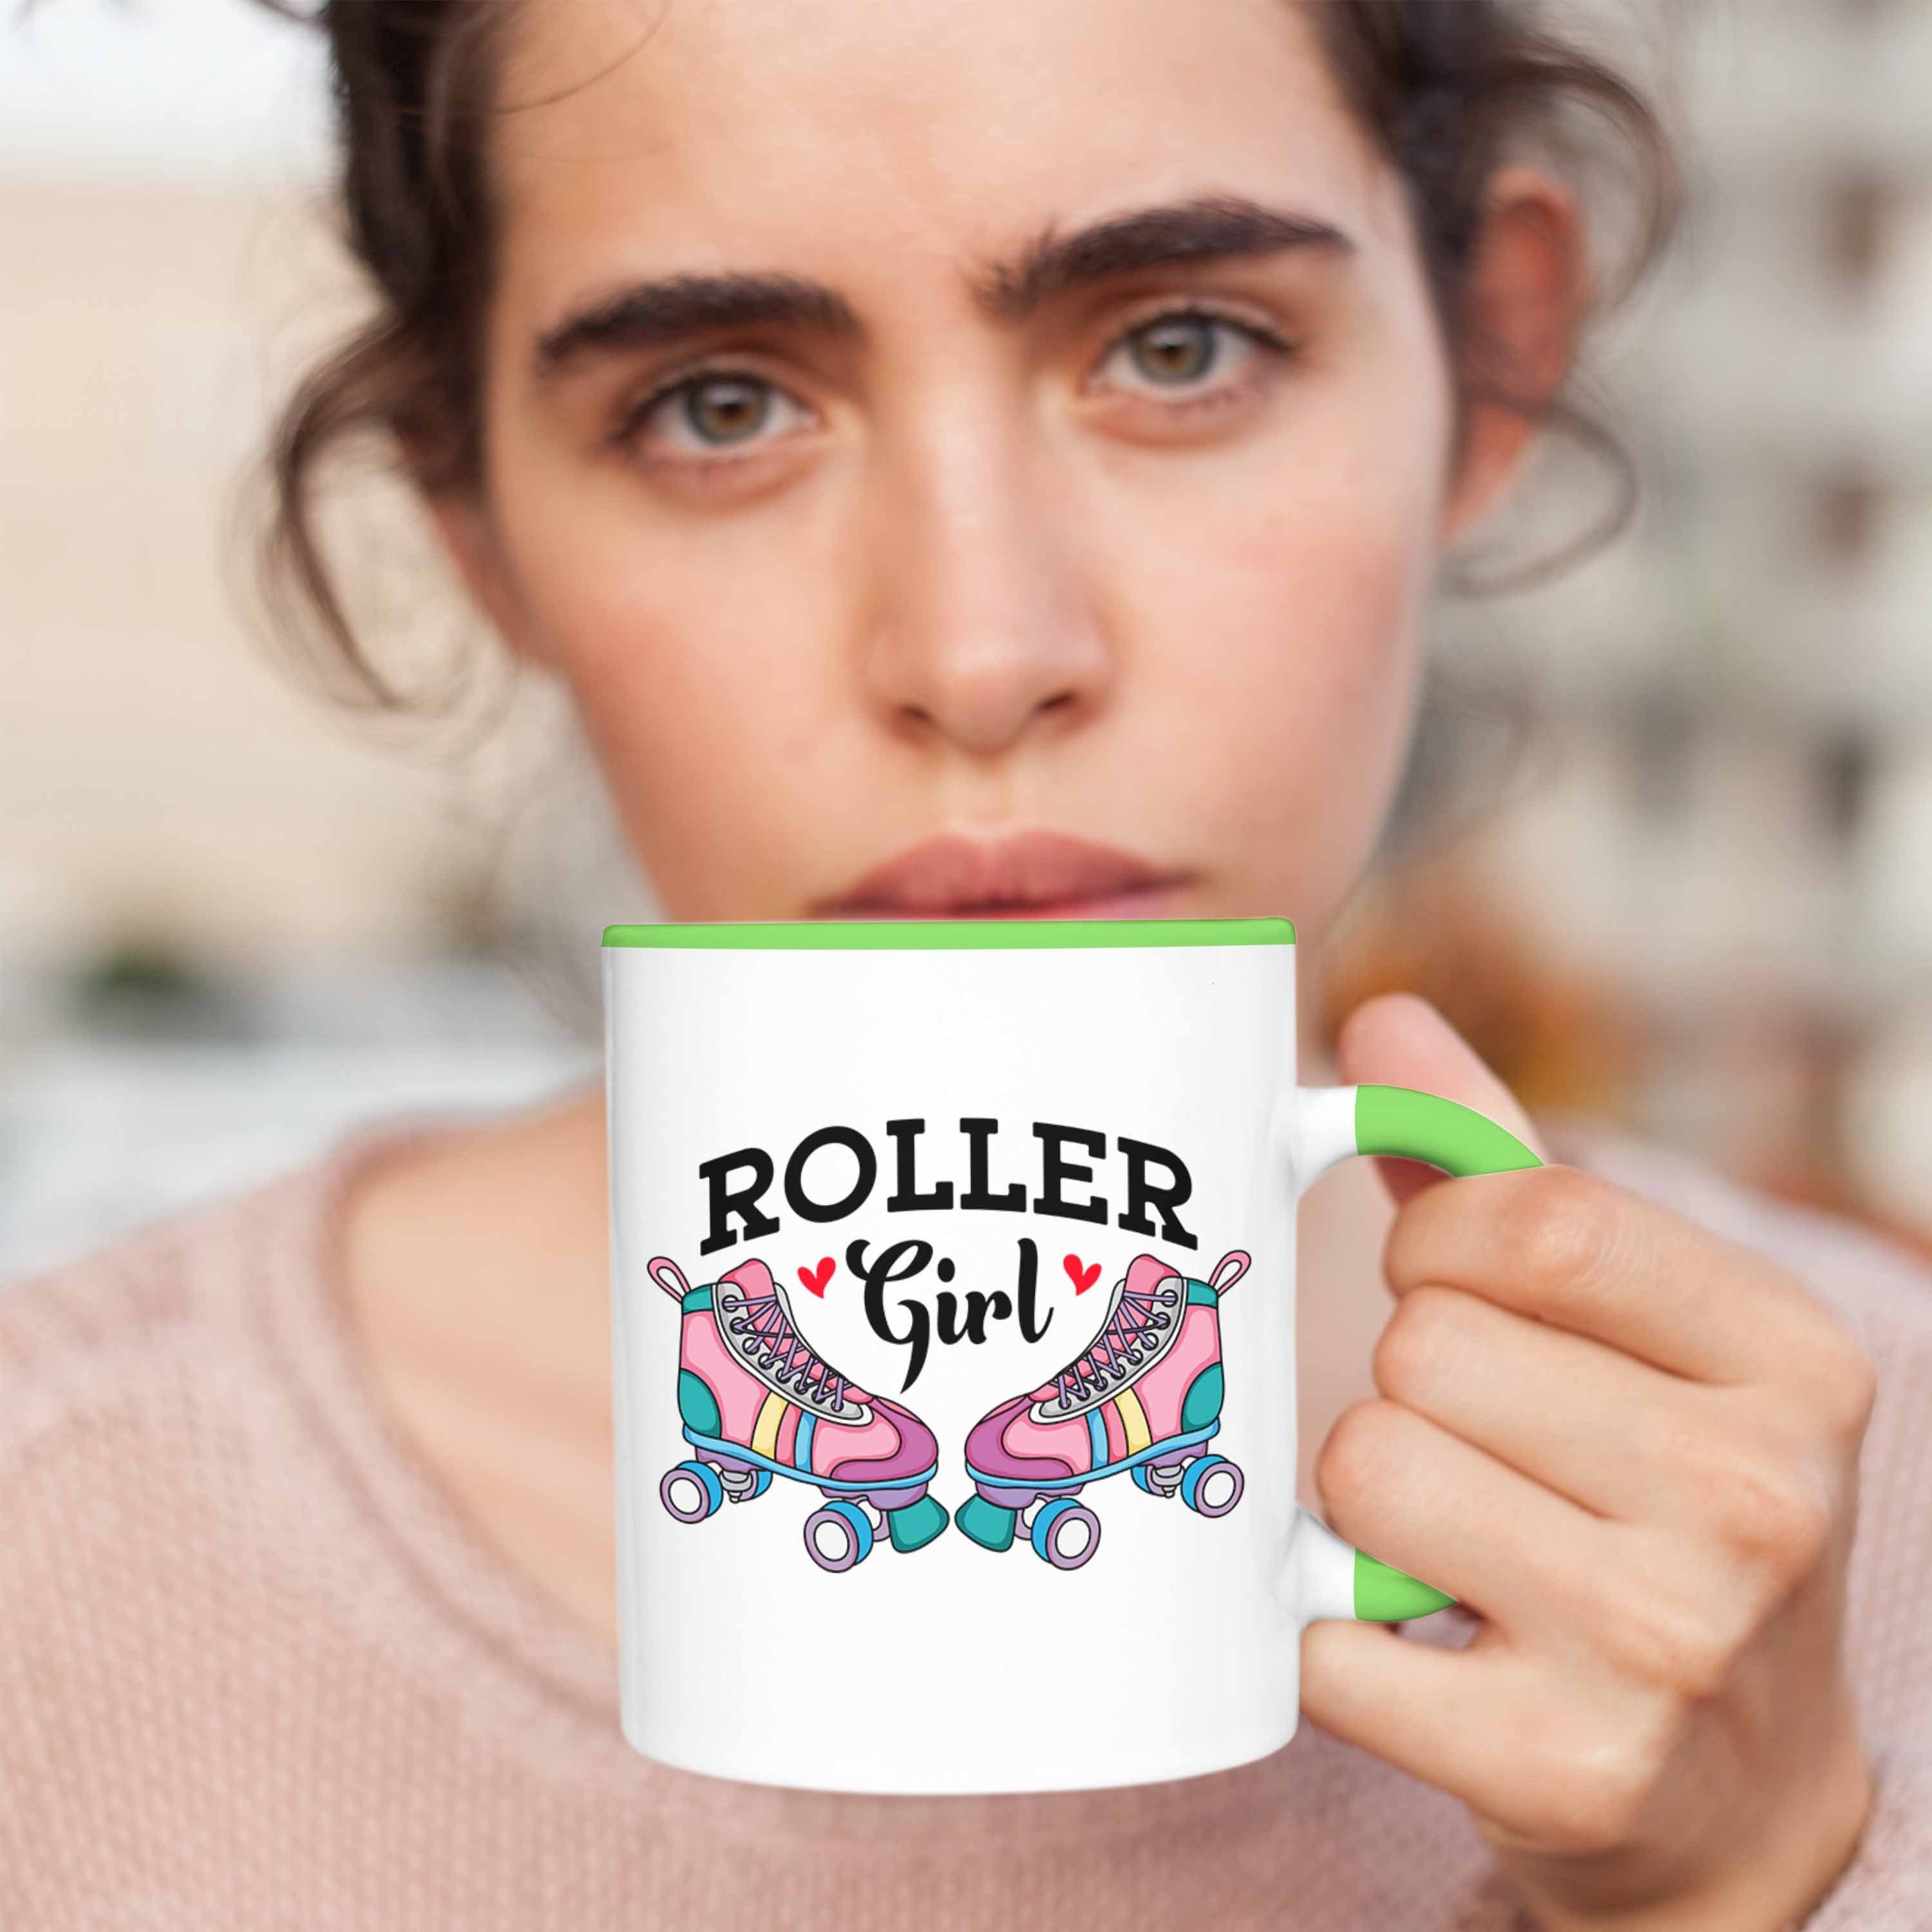 Trendation Tasse Girl" "Roller Grün für Rollschuh Tasse Geschenk Roller Girls 80er Nostalgie